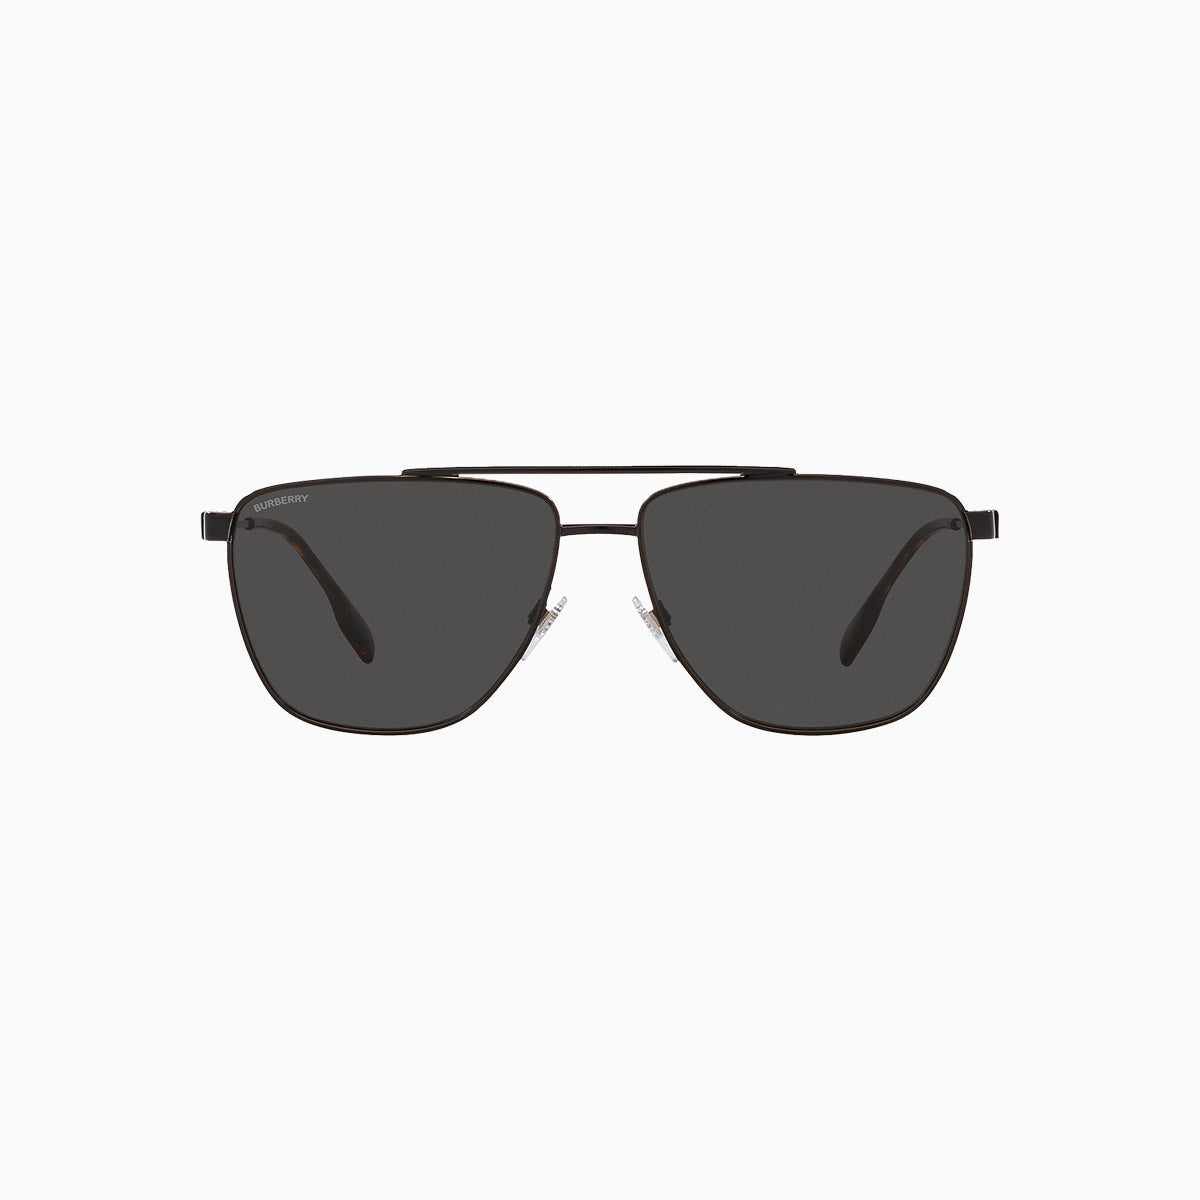 mens-burberry-blaine-sunglasses-0be3141-100187